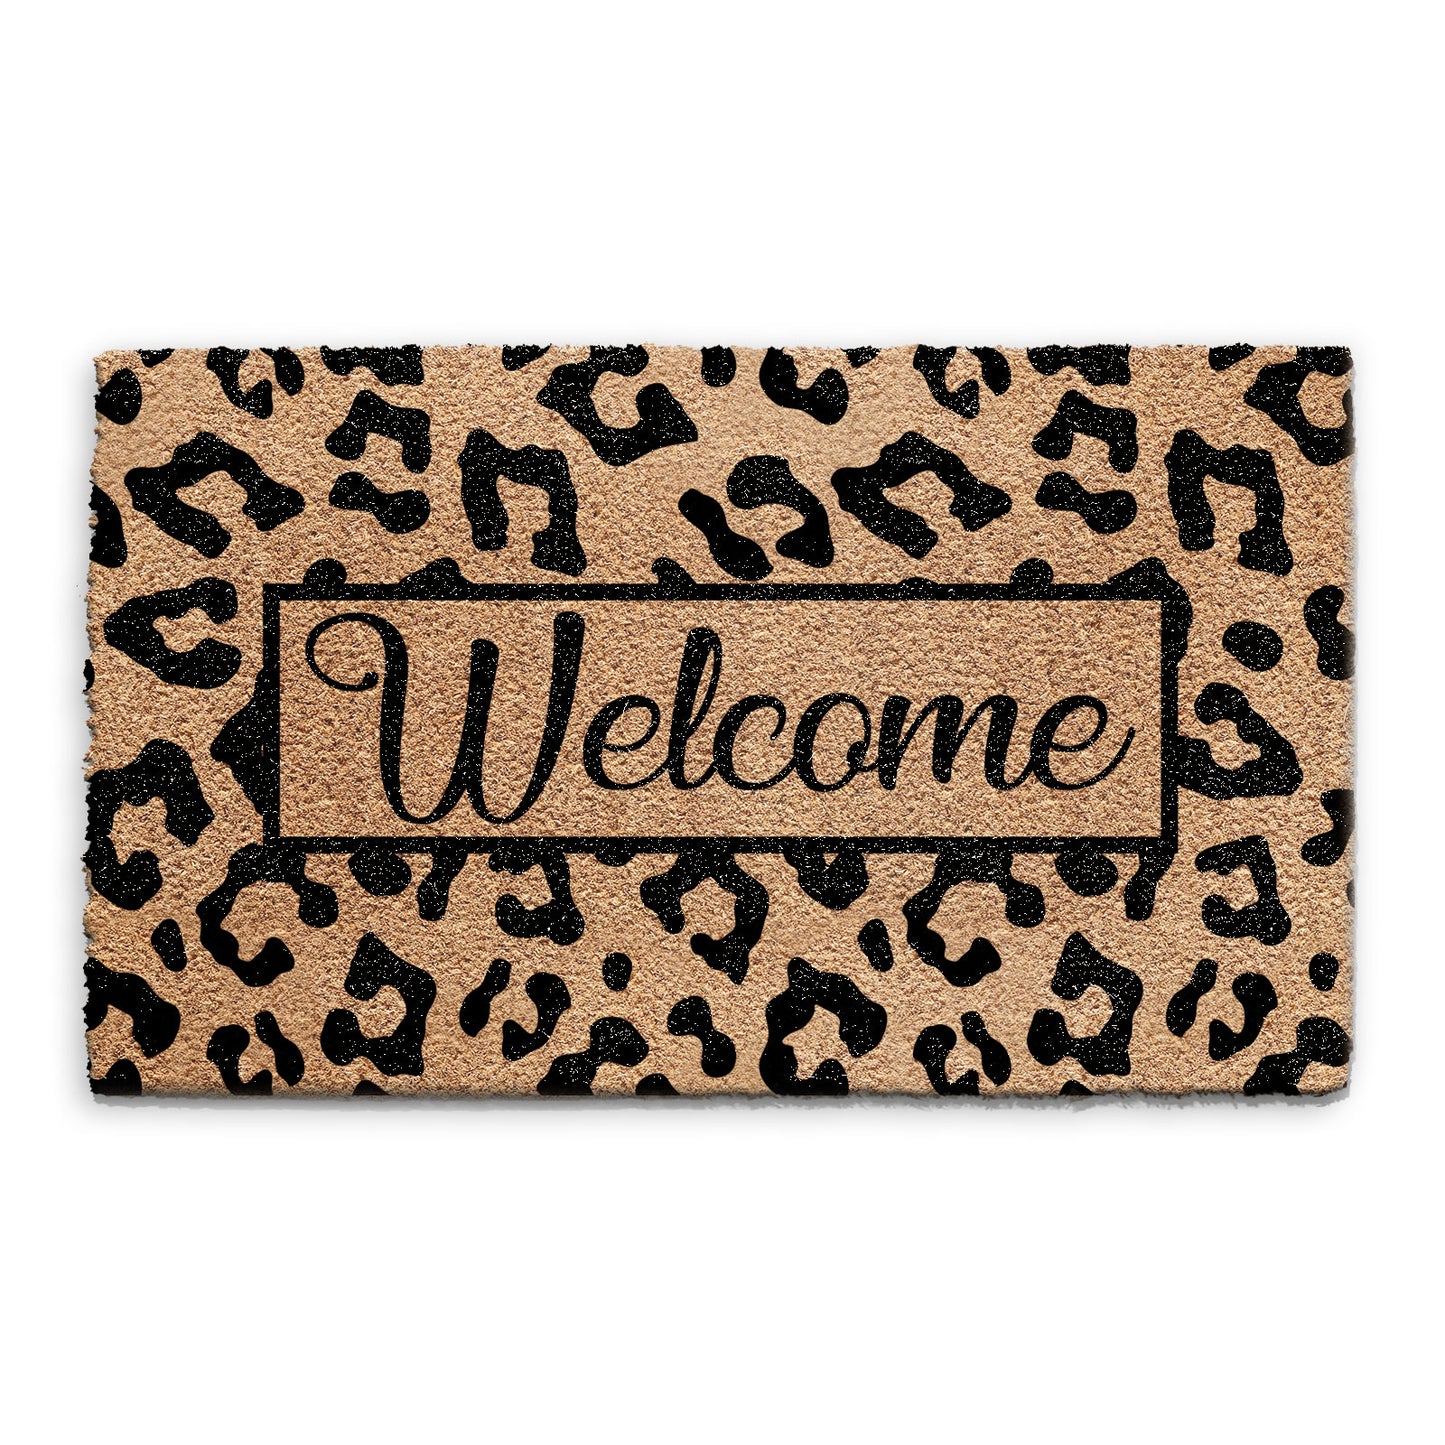 Coir Doormat - Leopard Print Welcome